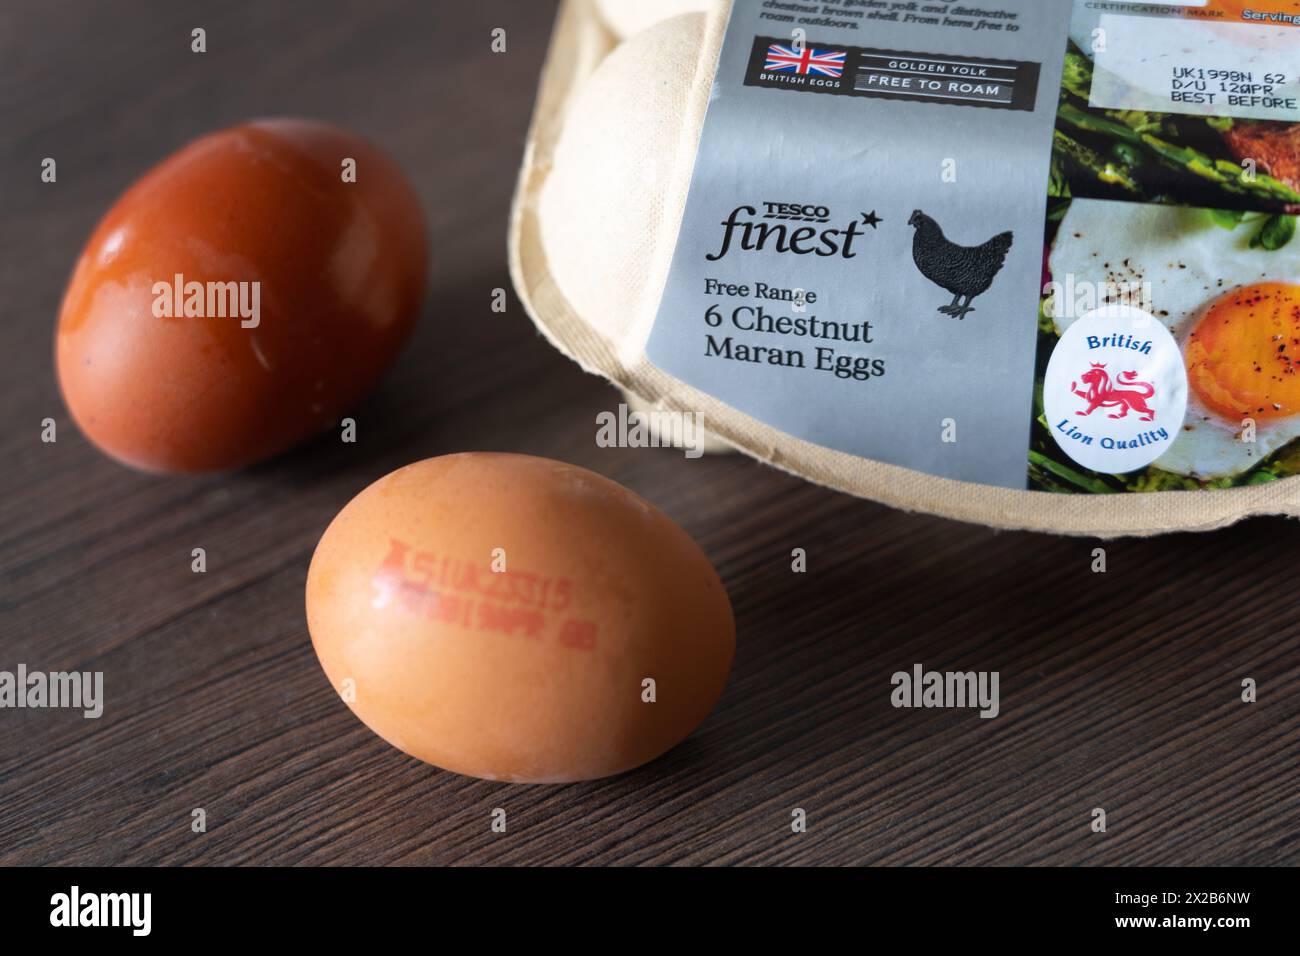 Tesco Finest marca propia de la marca libre de la gama Chestnut Maran huevos y un cartón de huevo, Inglaterra. Concepto: Huevos de supermercado, huevos de pollo, calidad del León Británico Foto de stock